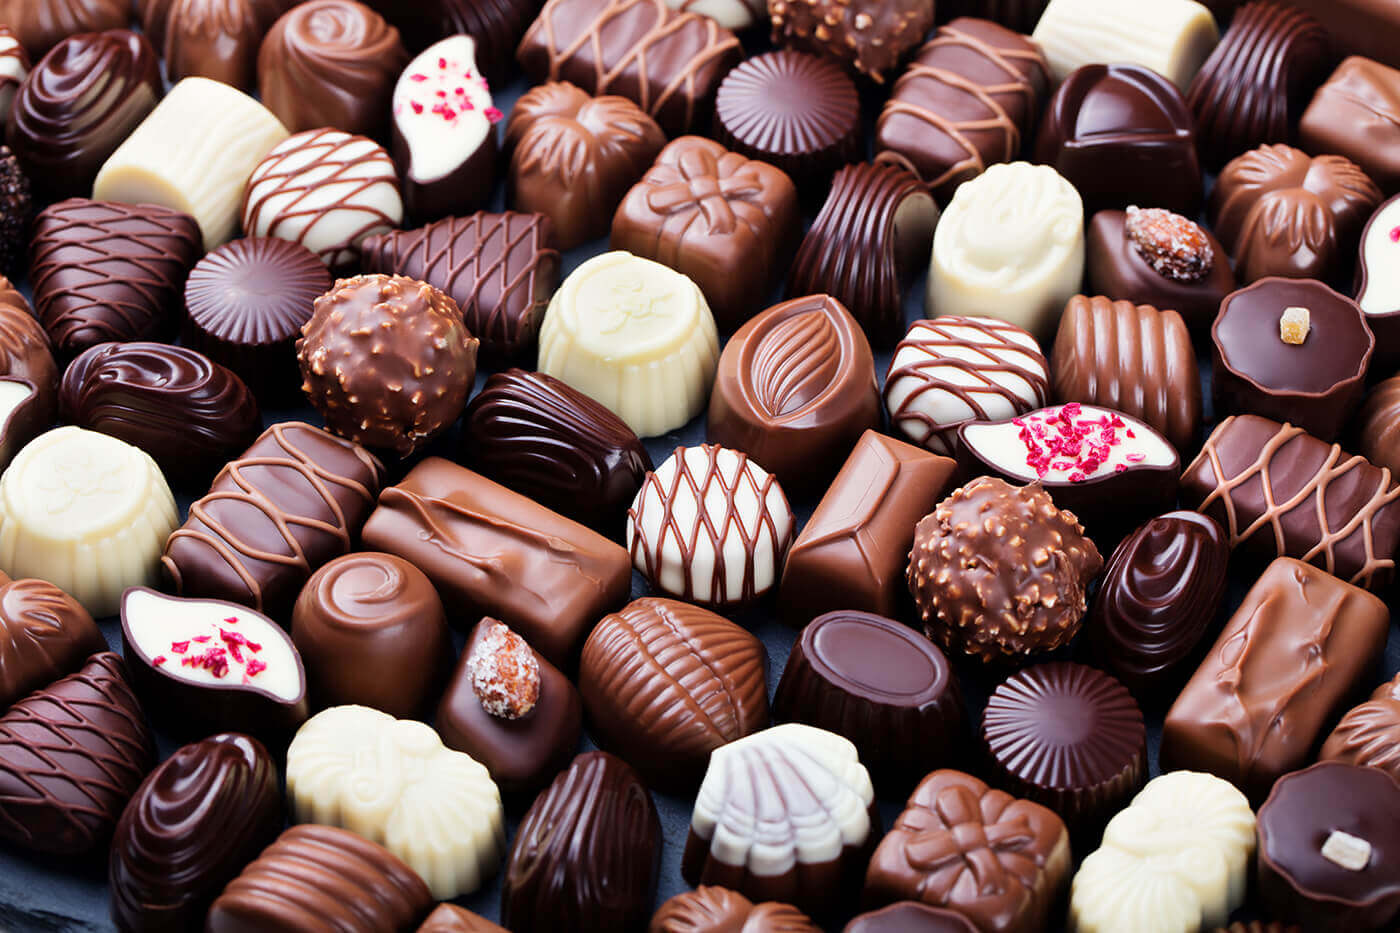 Chocolate trở thành món quà tặng Valentine cho nữ mang biểu tượng của tình yêu